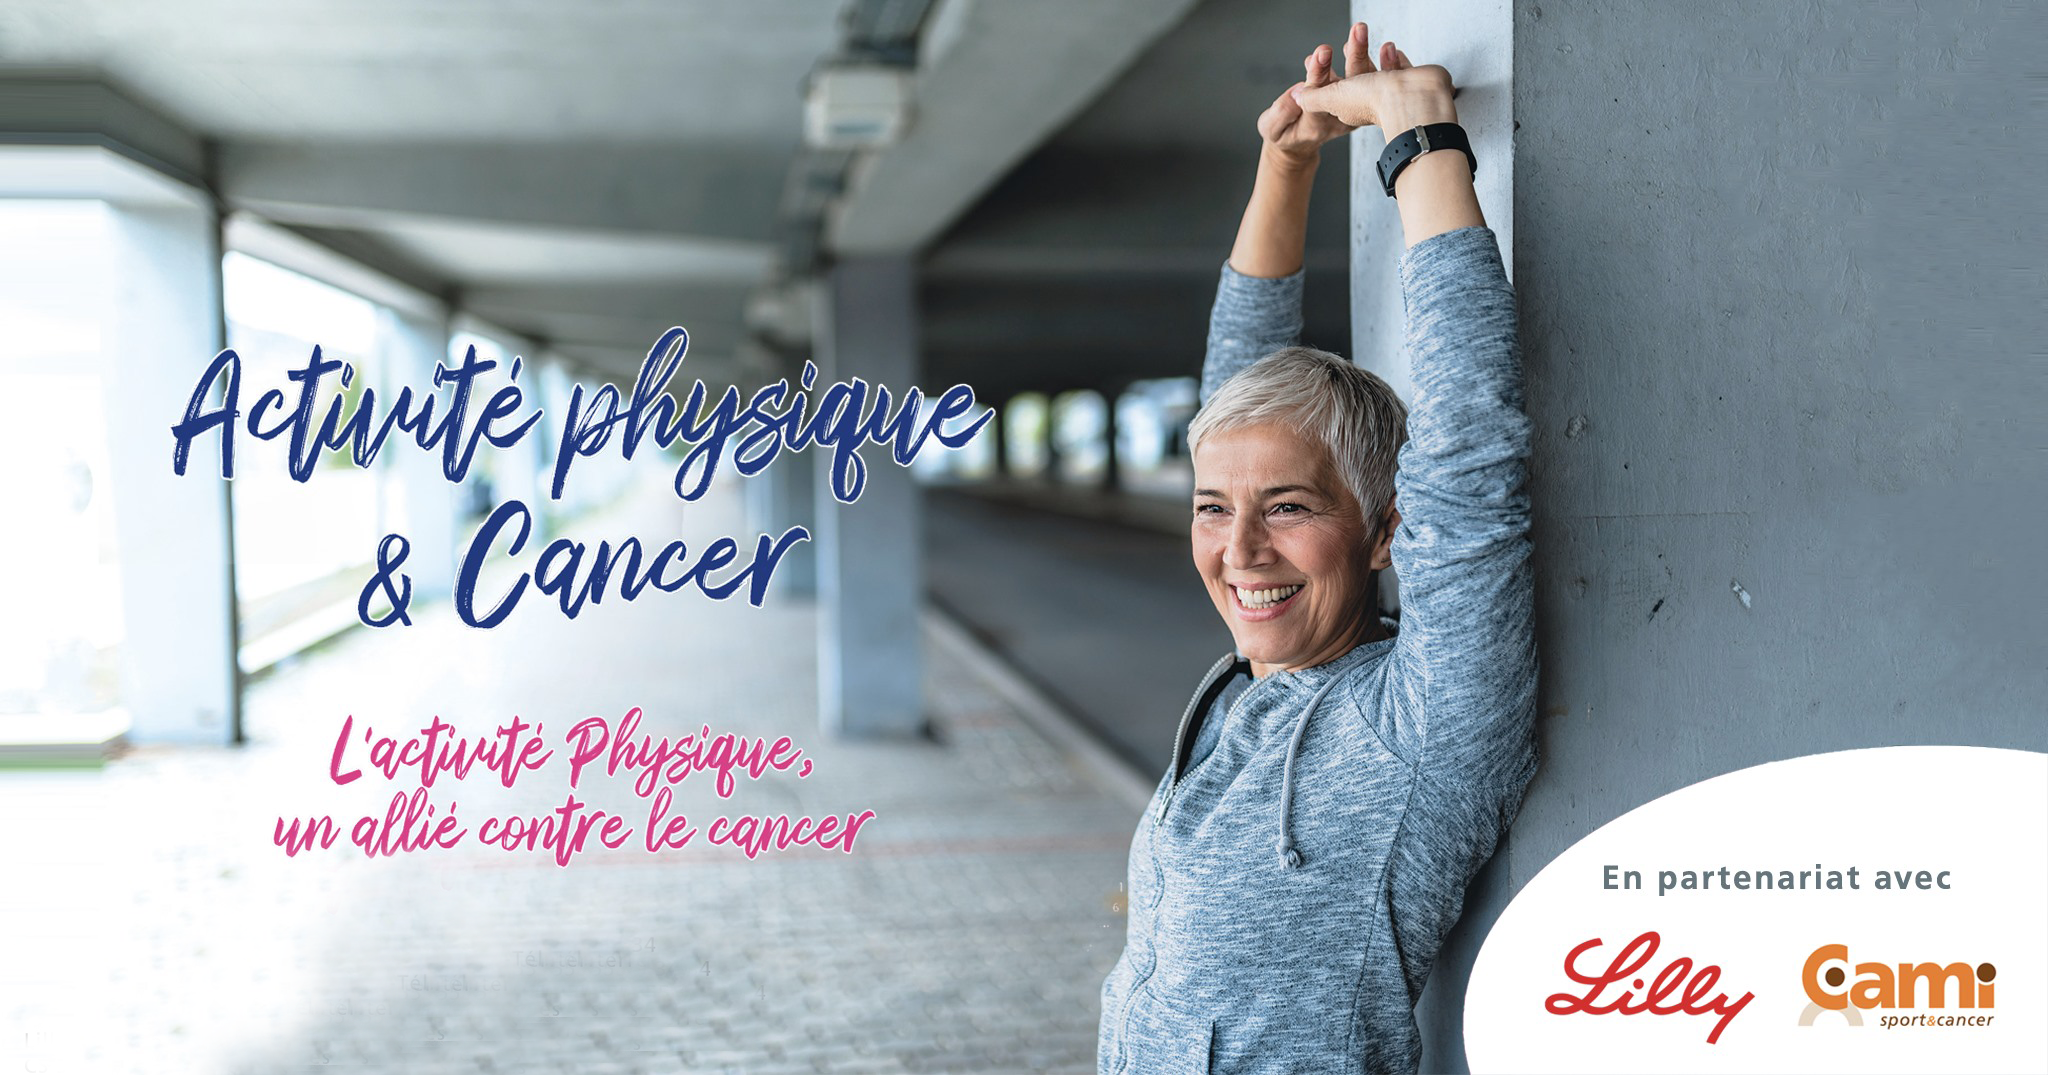 La CAMI Sport & Cancer et le laboratoire Lilly France  poursuivent et enrichissent leur partenariat pour sensibiliser  à la pratique de l’activité physique thérapeutique en cancérologie